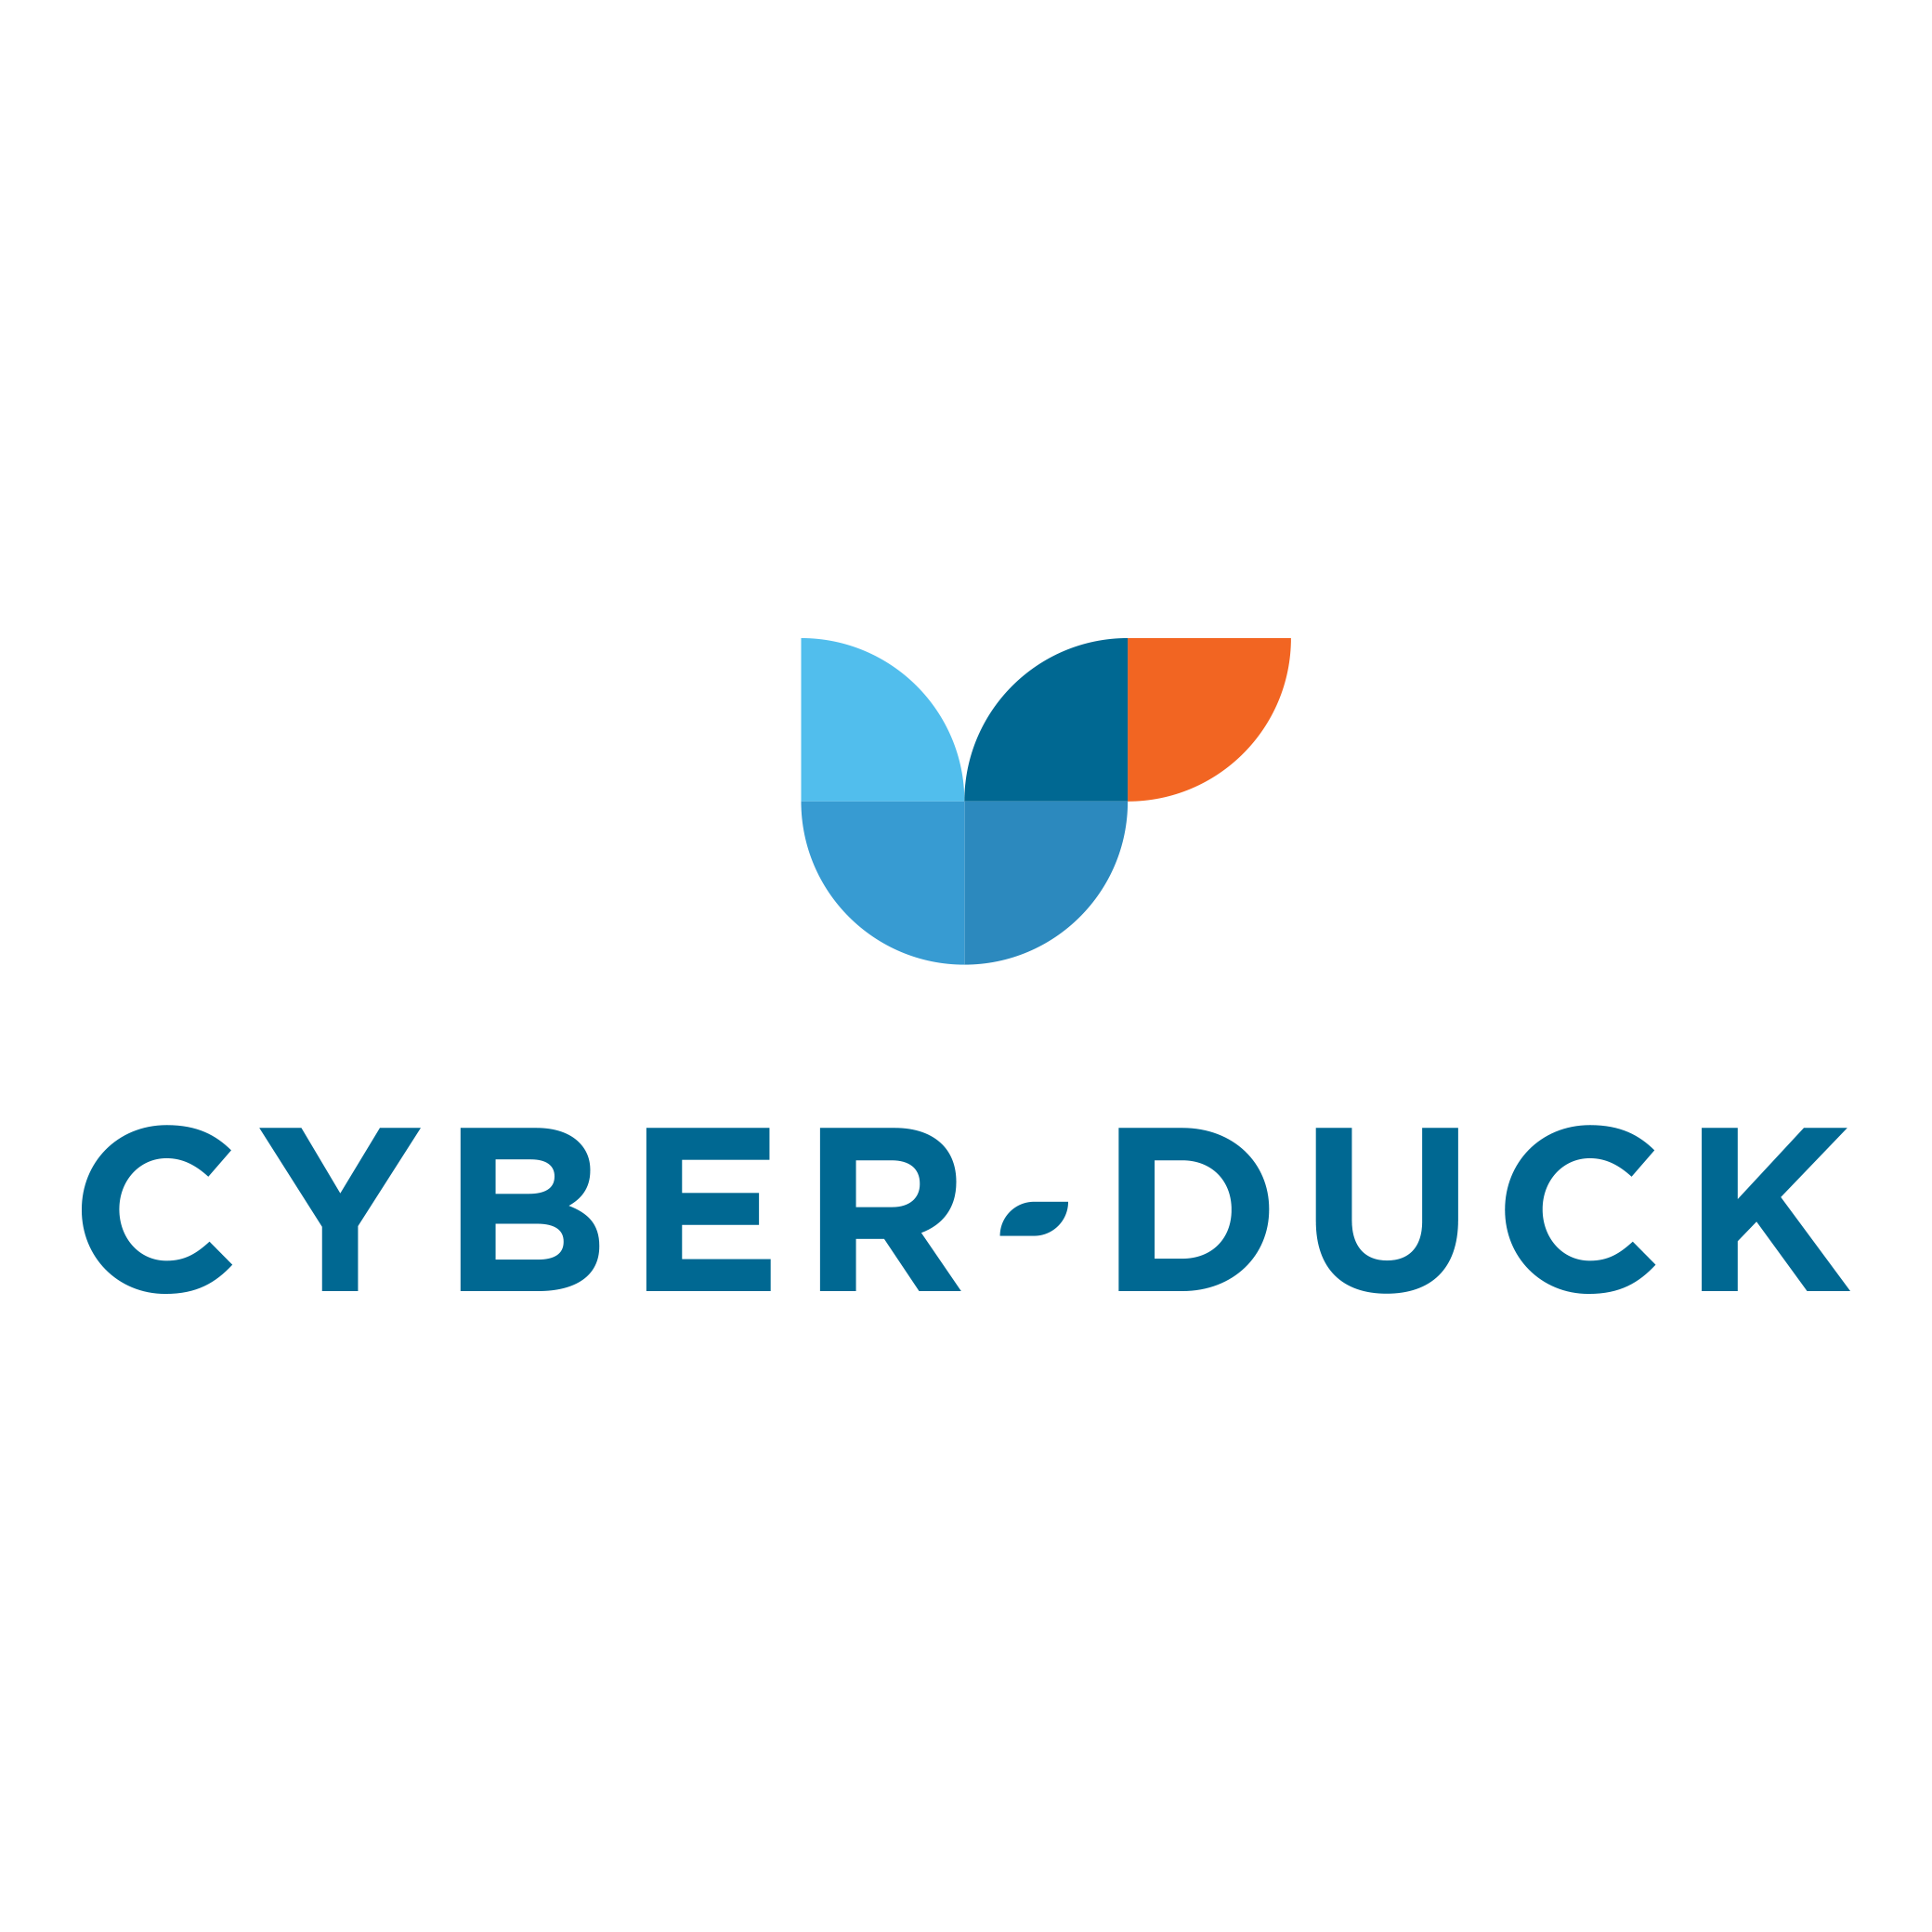 cyberduck logo